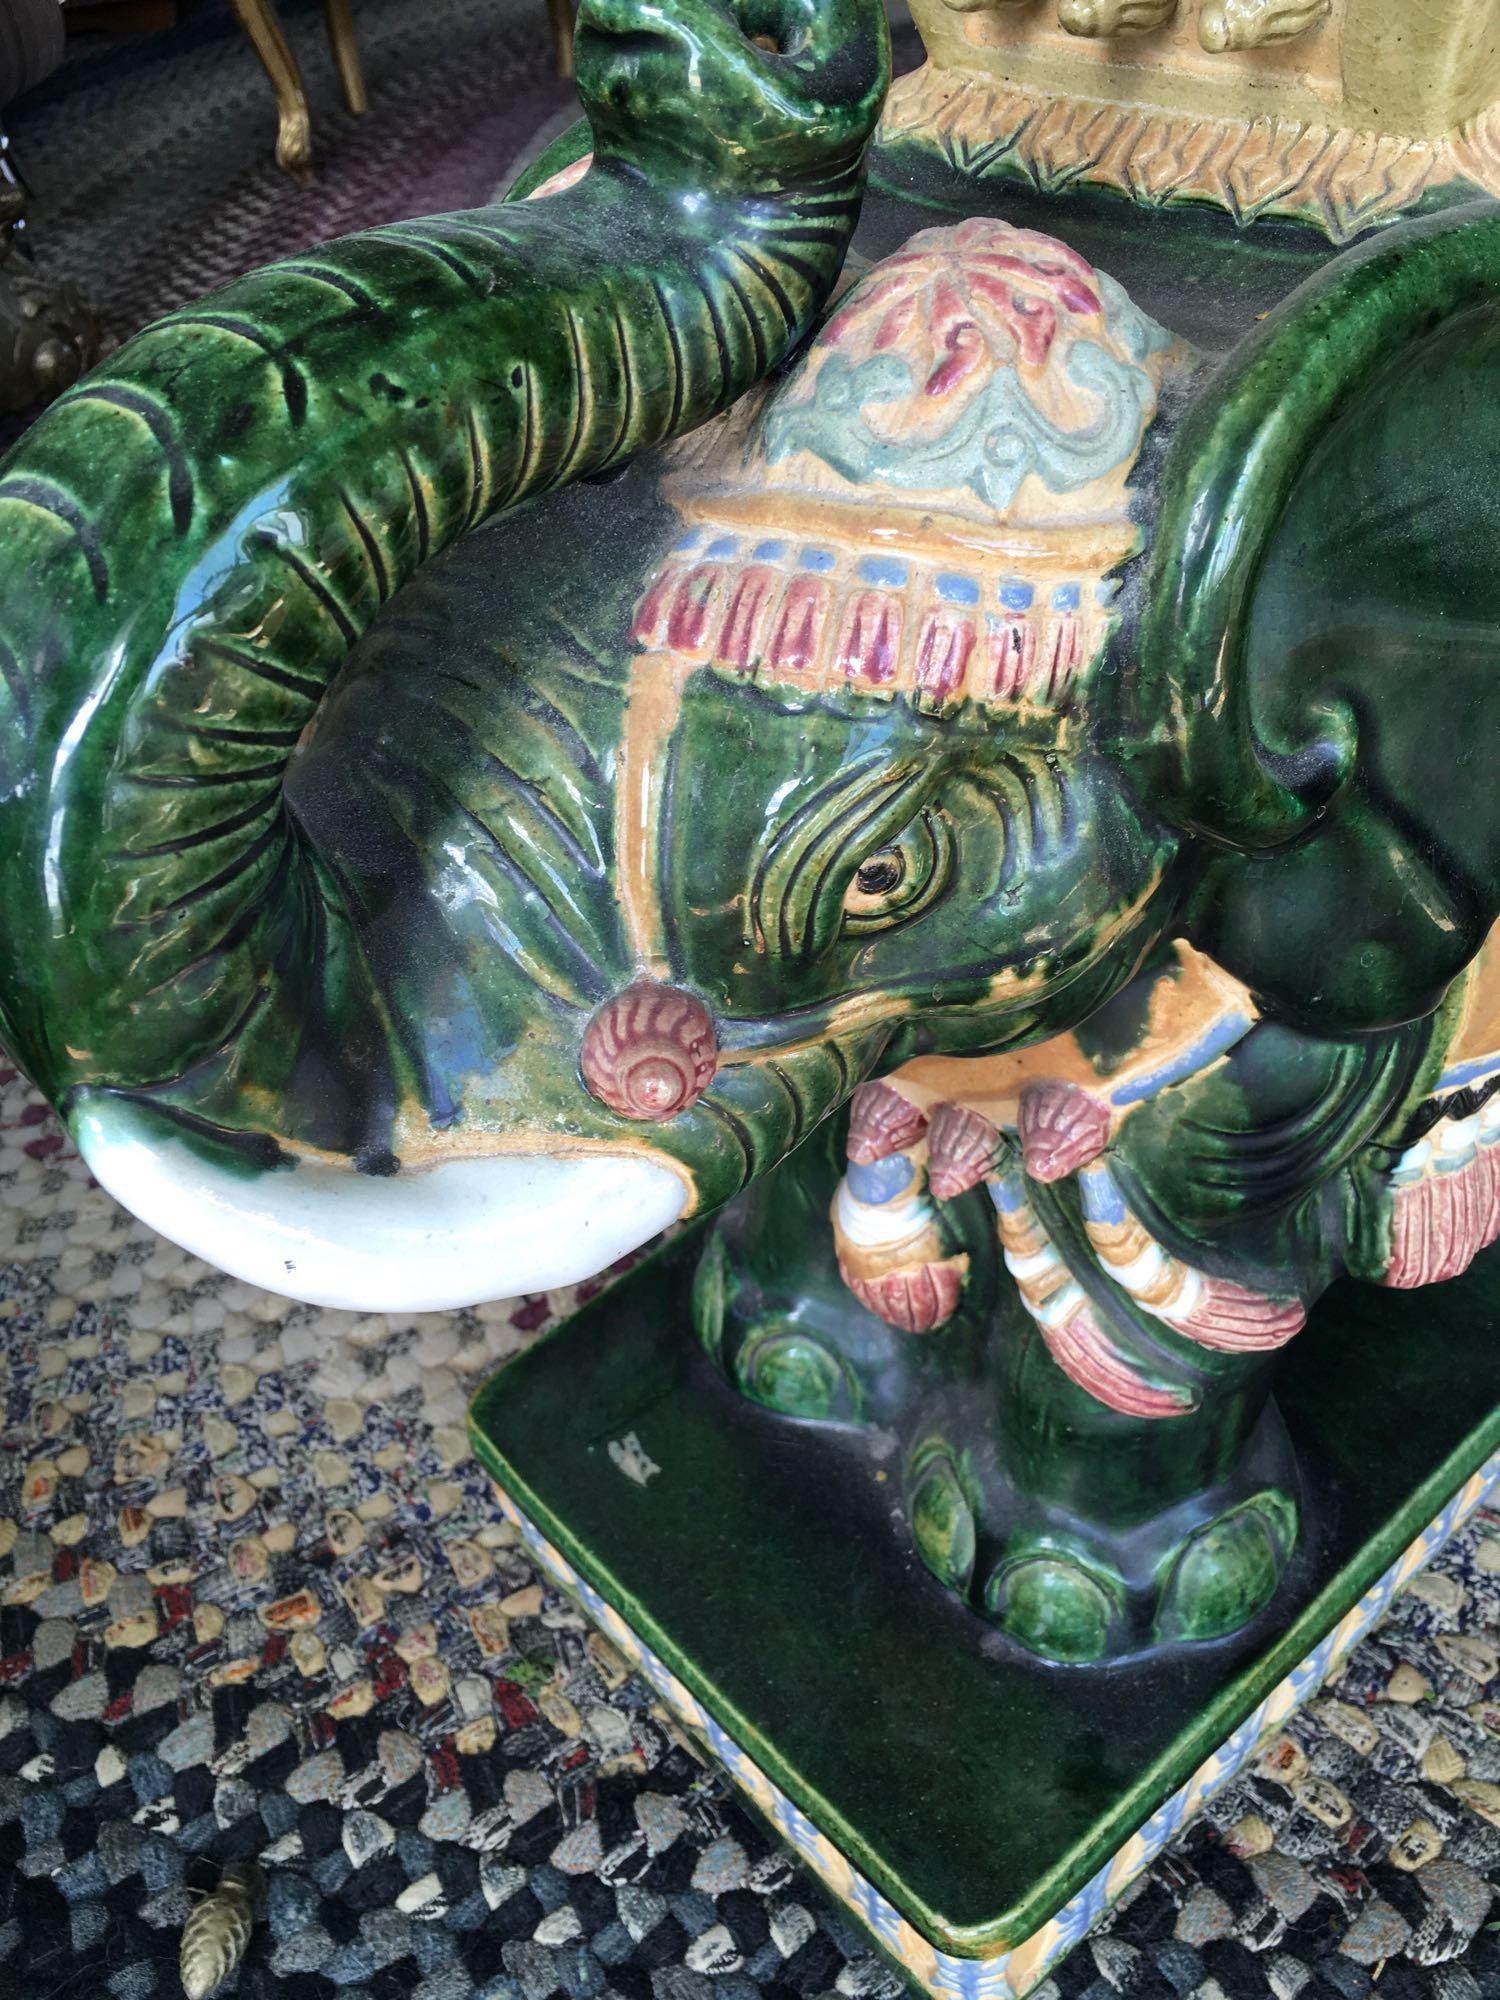 Ceramic Elephant, Oriental stand/table 22" x 20" x 8"